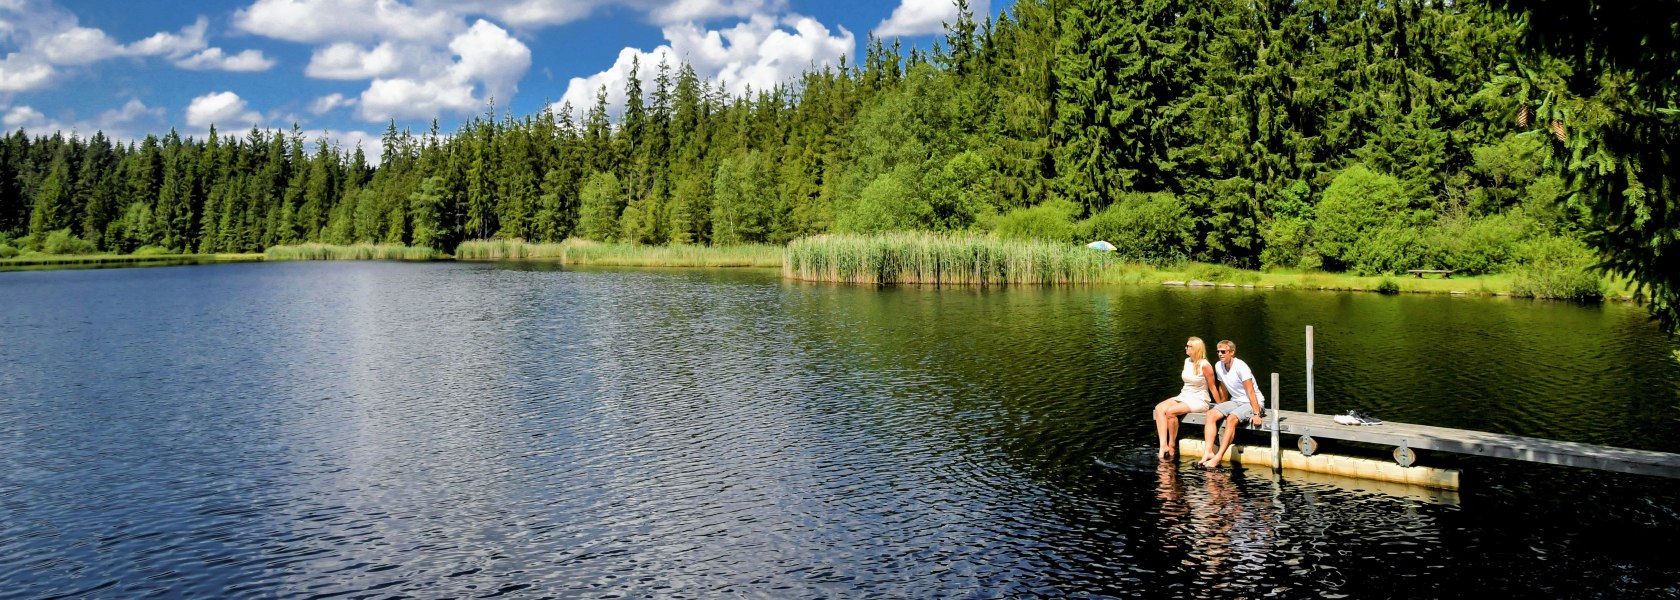 Stierhüblteich moor pond near the village of Karlstift, © Verein Naturpark Nordwald